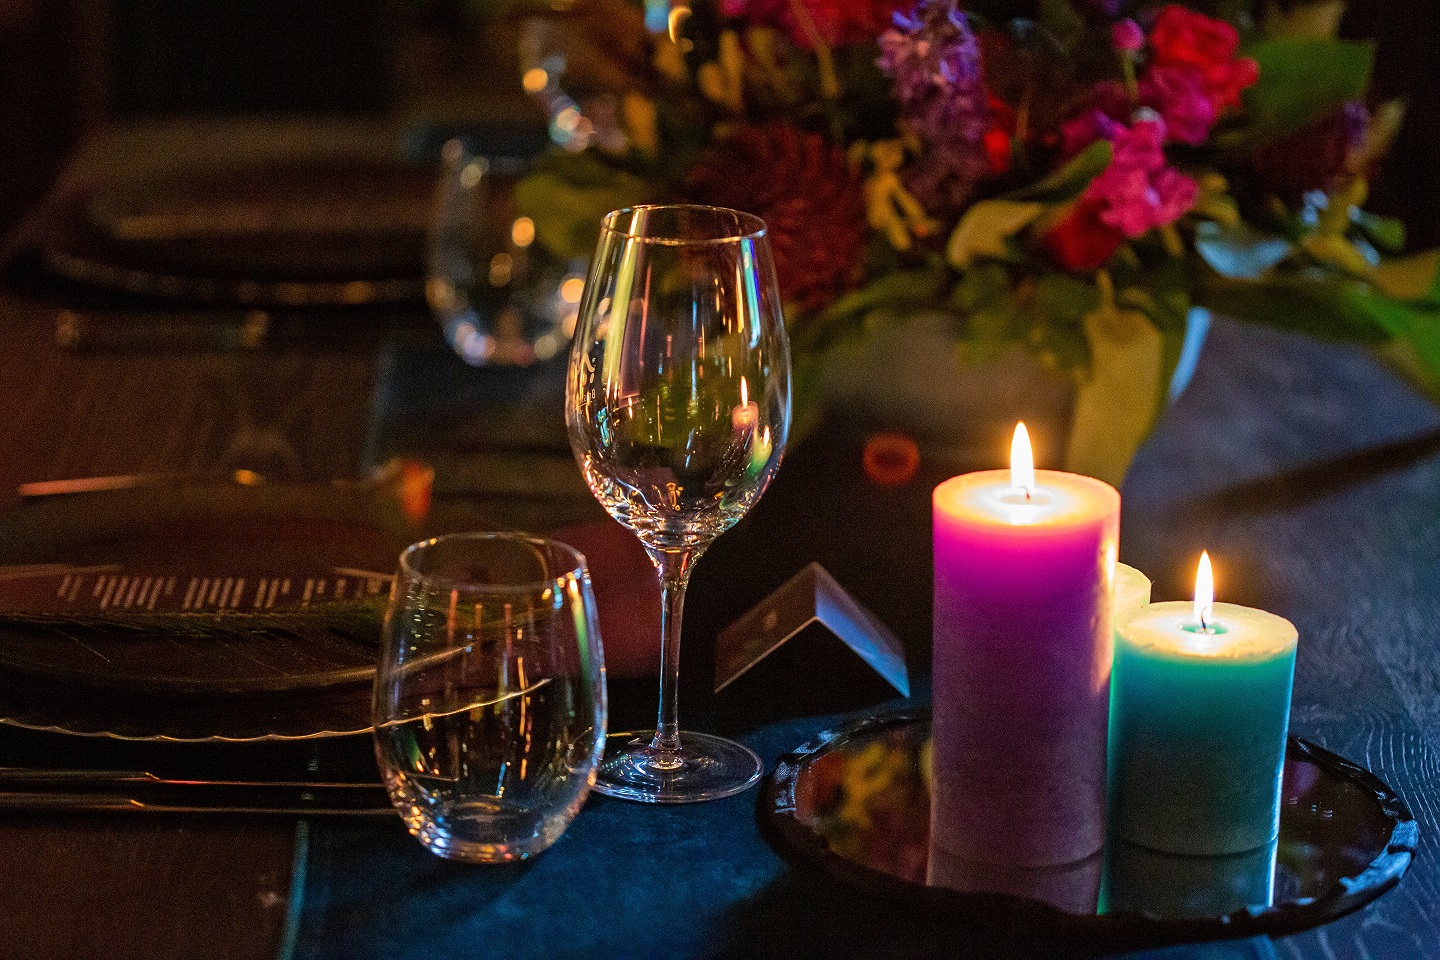 Sweetheart table aangekleed in paars, zeegroen en zwart met stoere accenten